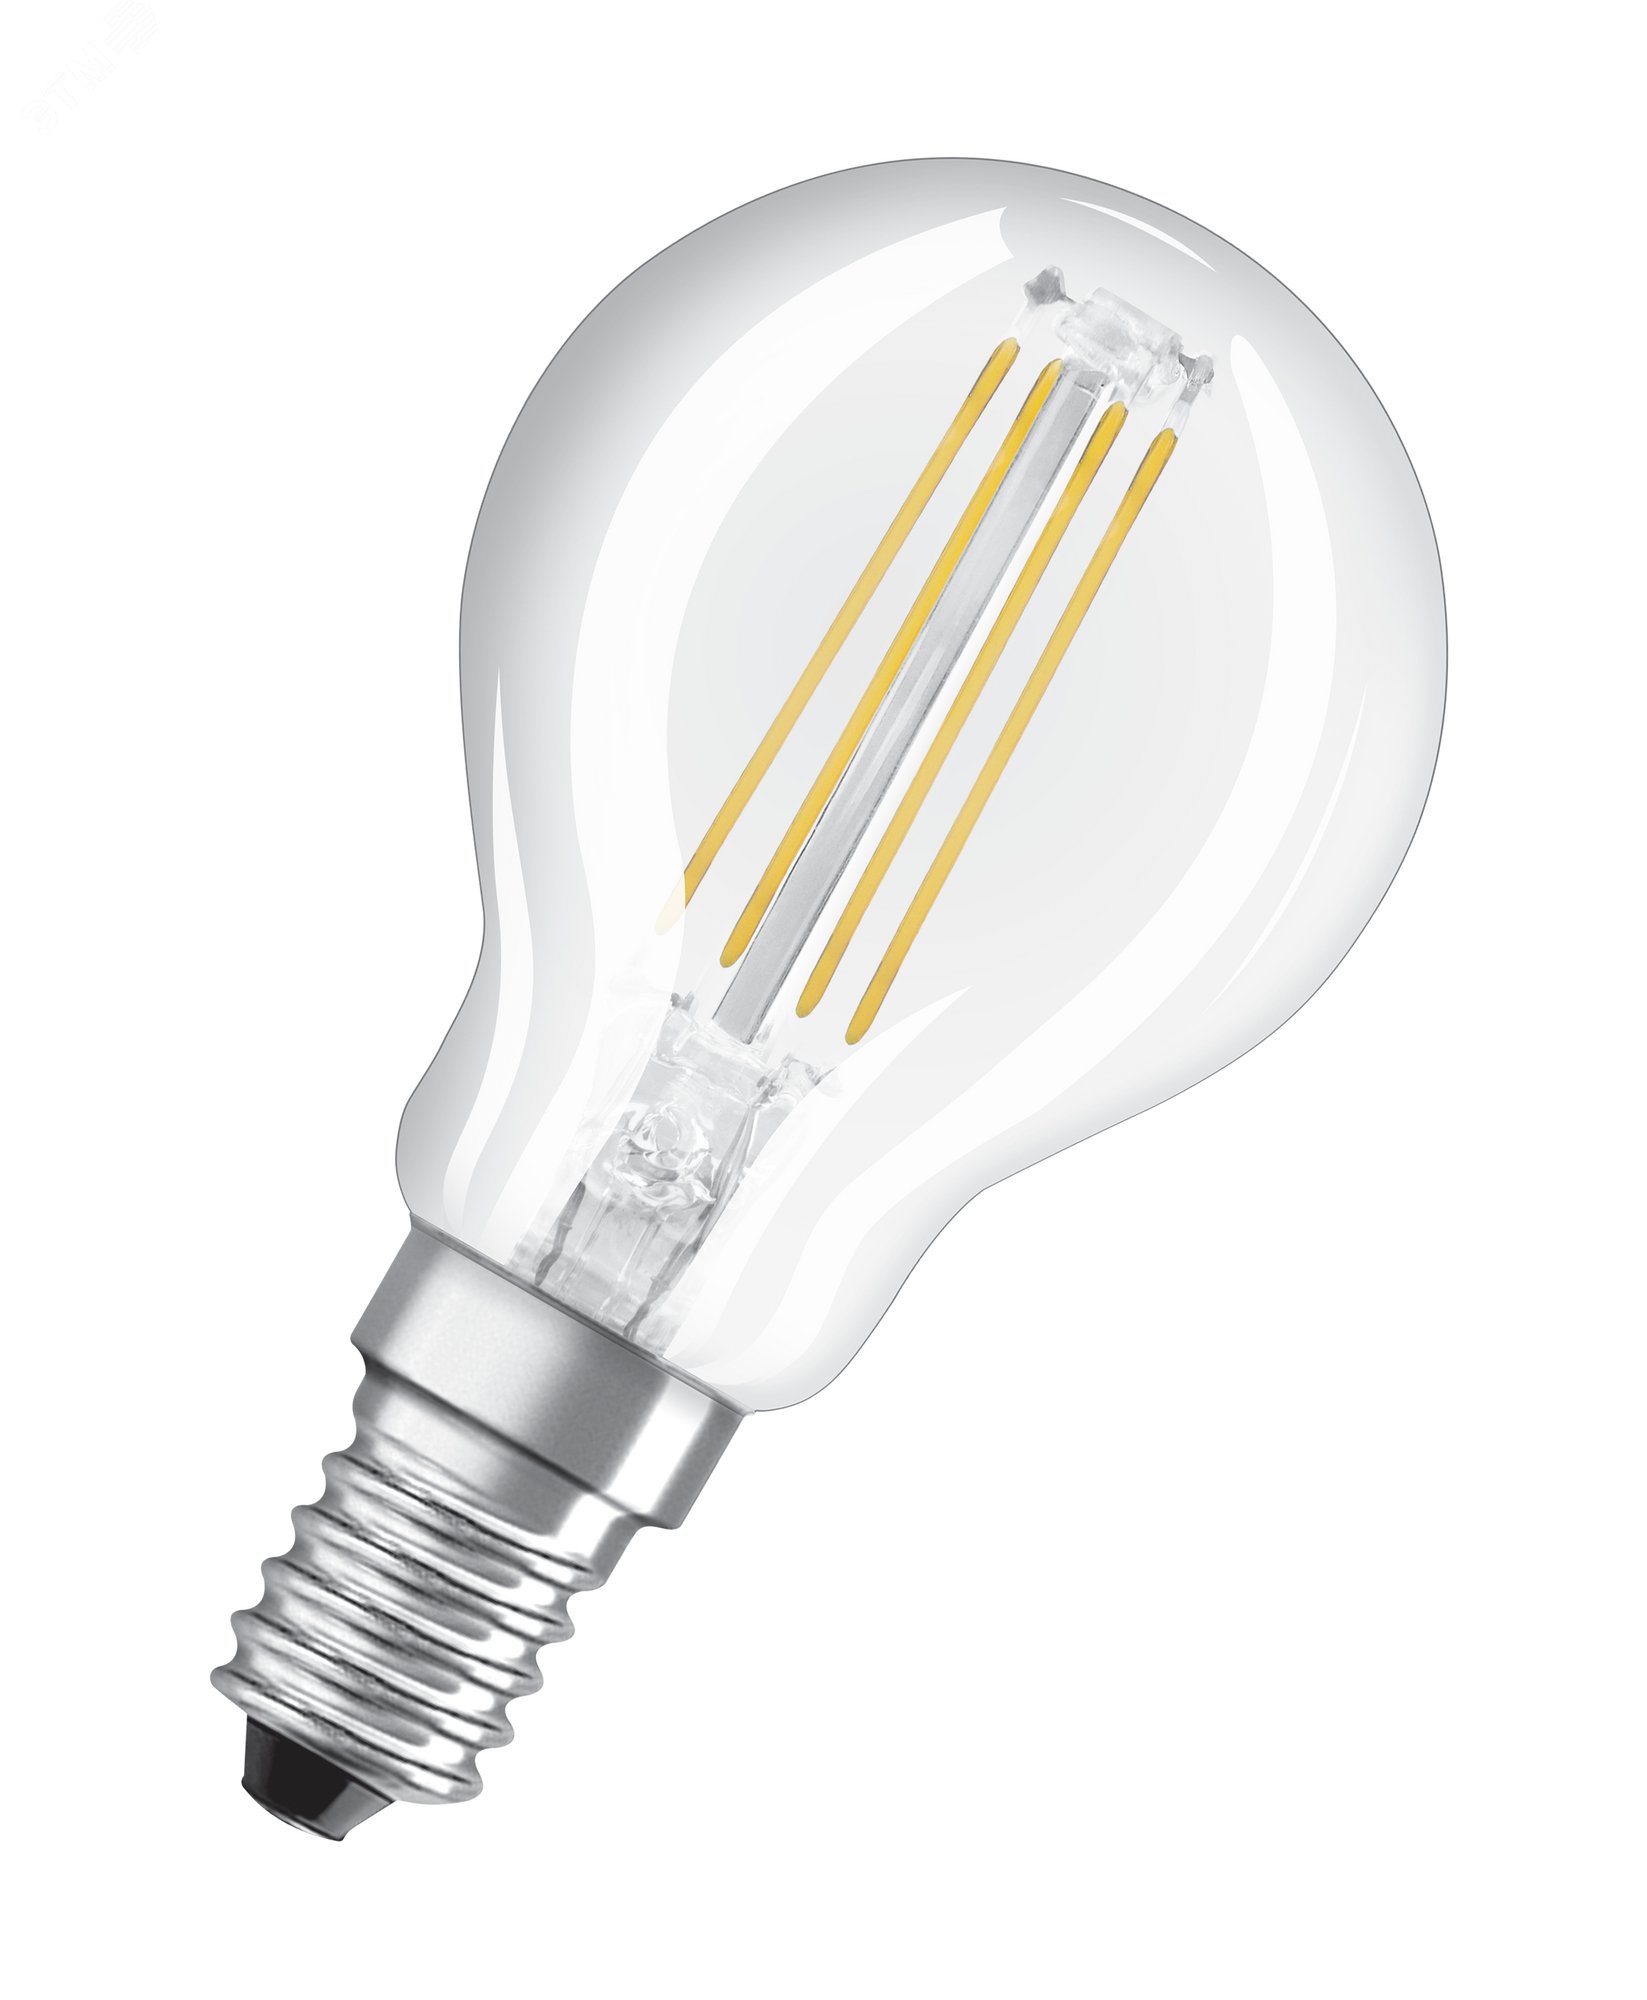 Лампа светодиодная филаментная LED 4Вт E14 2700К 470лм груша 230V CL (замена 40Вт) P FIL  OSRAM LV 4058075438590 LEDVANCE